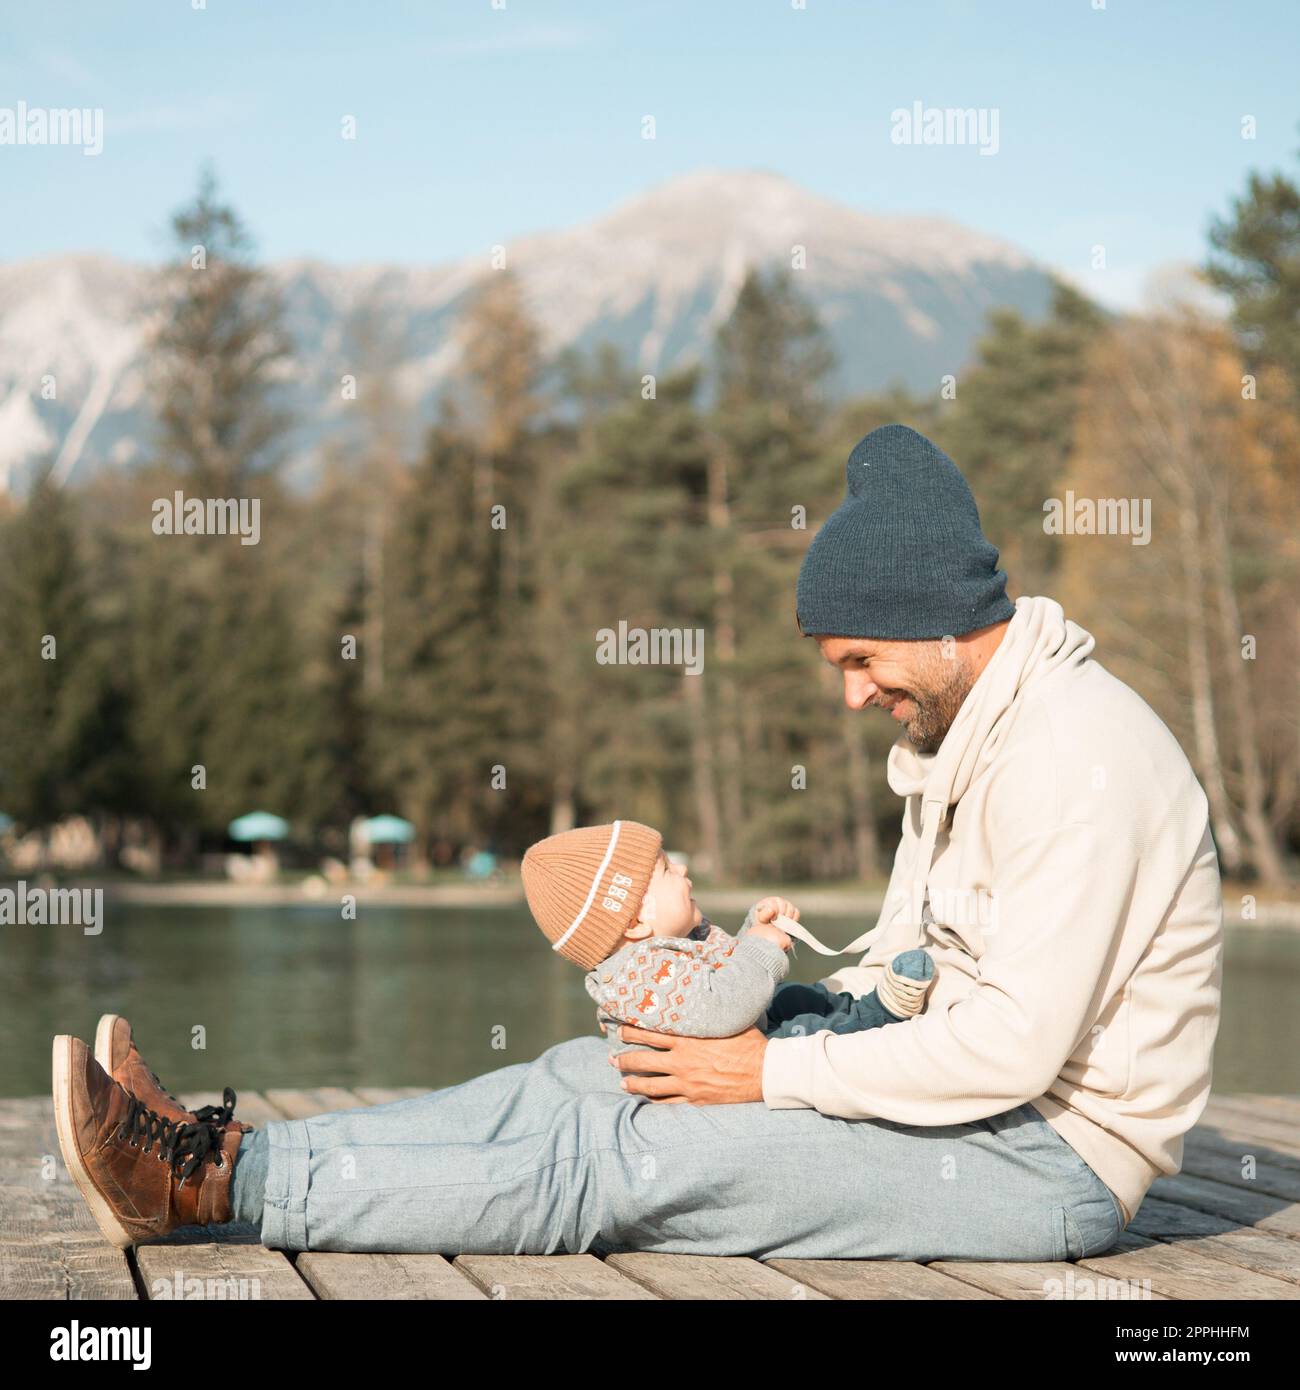 Famille heureuse. Père jouant avec son bébé garçon Oudoors le jour ensoleillé d'automne. Portrait de papa et petit fils sur une plate-forme en bois au bord du lac. Émotions humaines positives, sentiments, joie. Banque D'Images